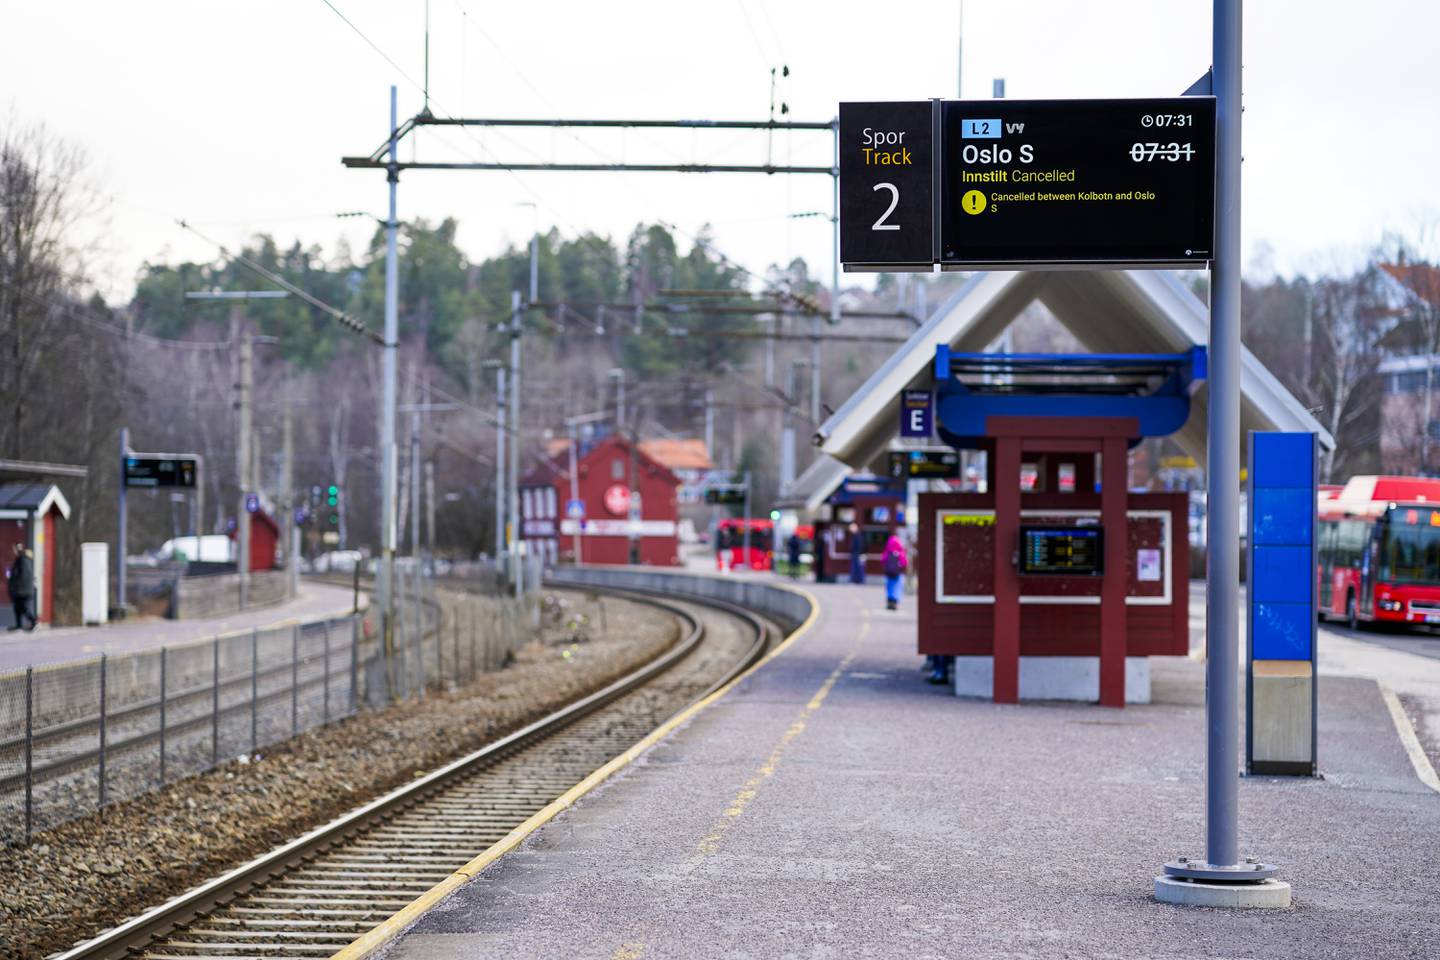 Hauketo er en av mange stasjoner og holdeplasser i Oslo, men i fleste andre kommuner finnes det ikke én eneste.